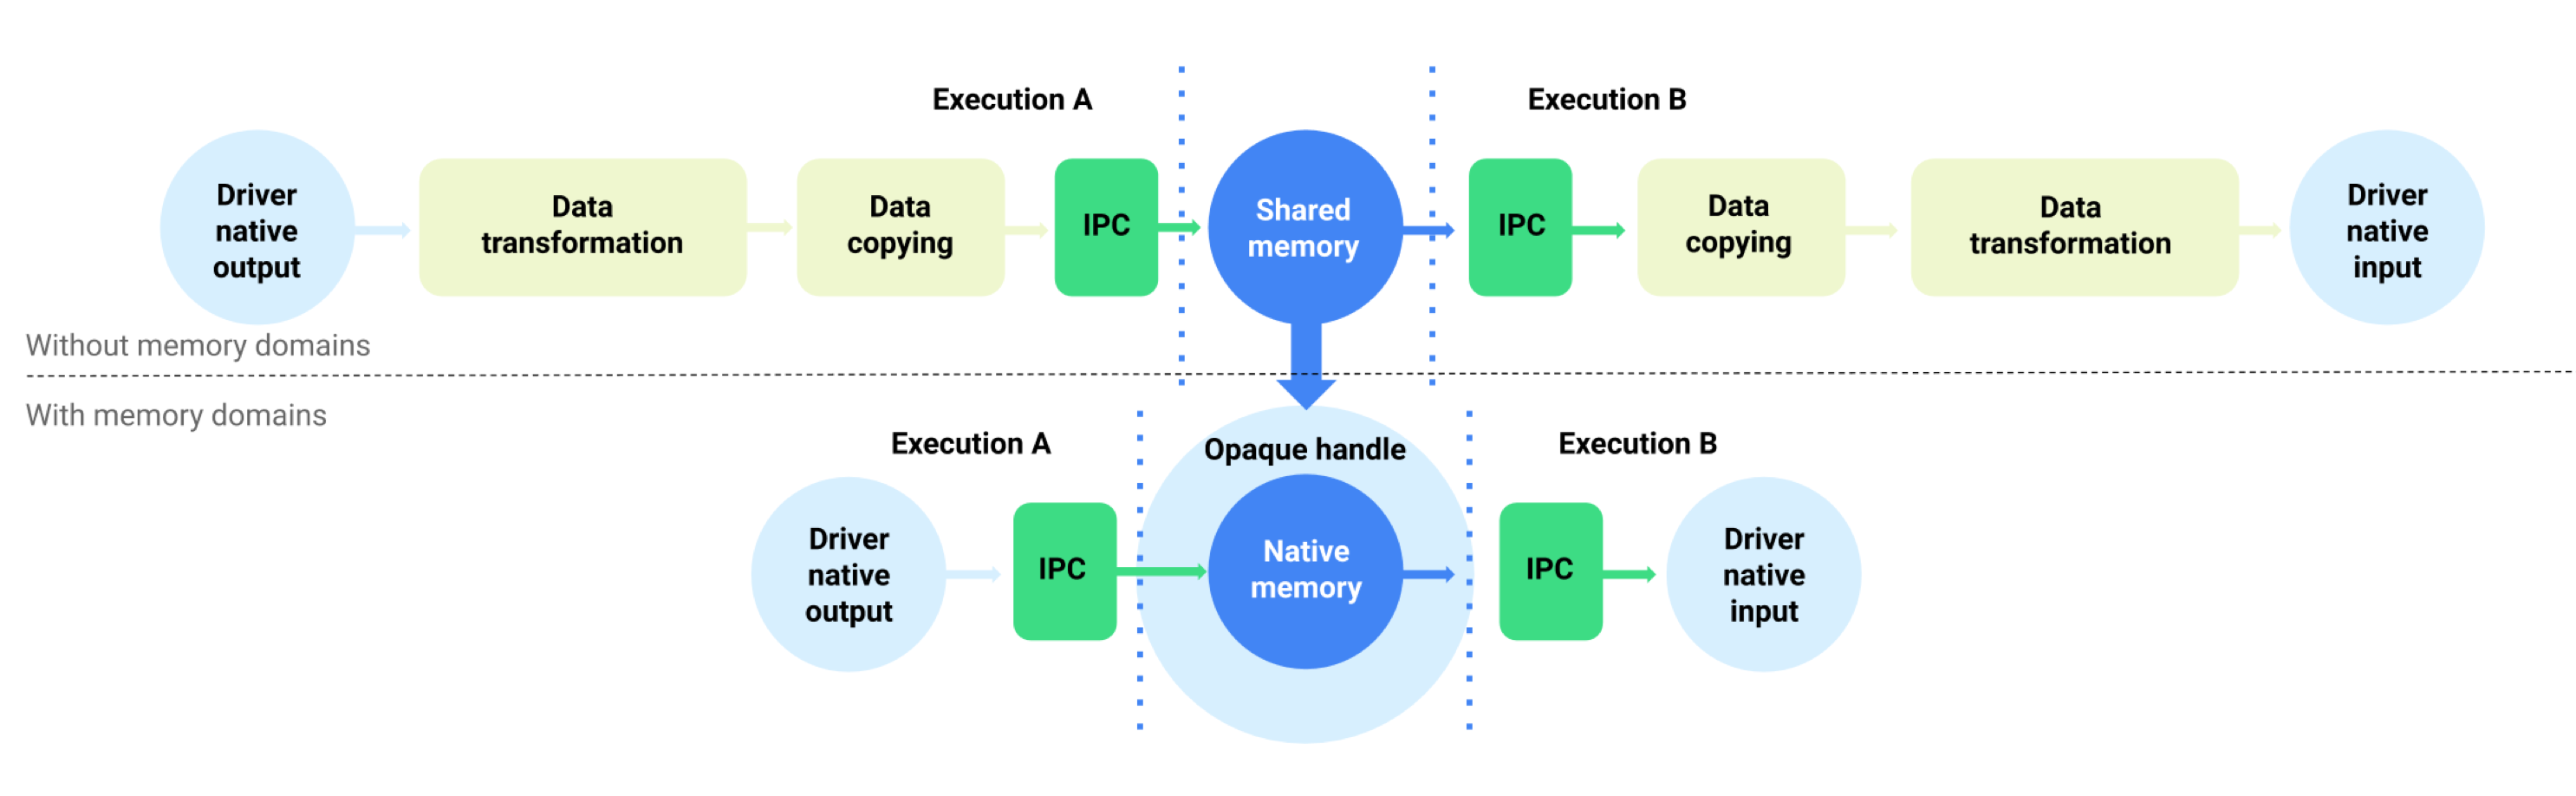 Буферизация потока данных с доменами памяти и без них